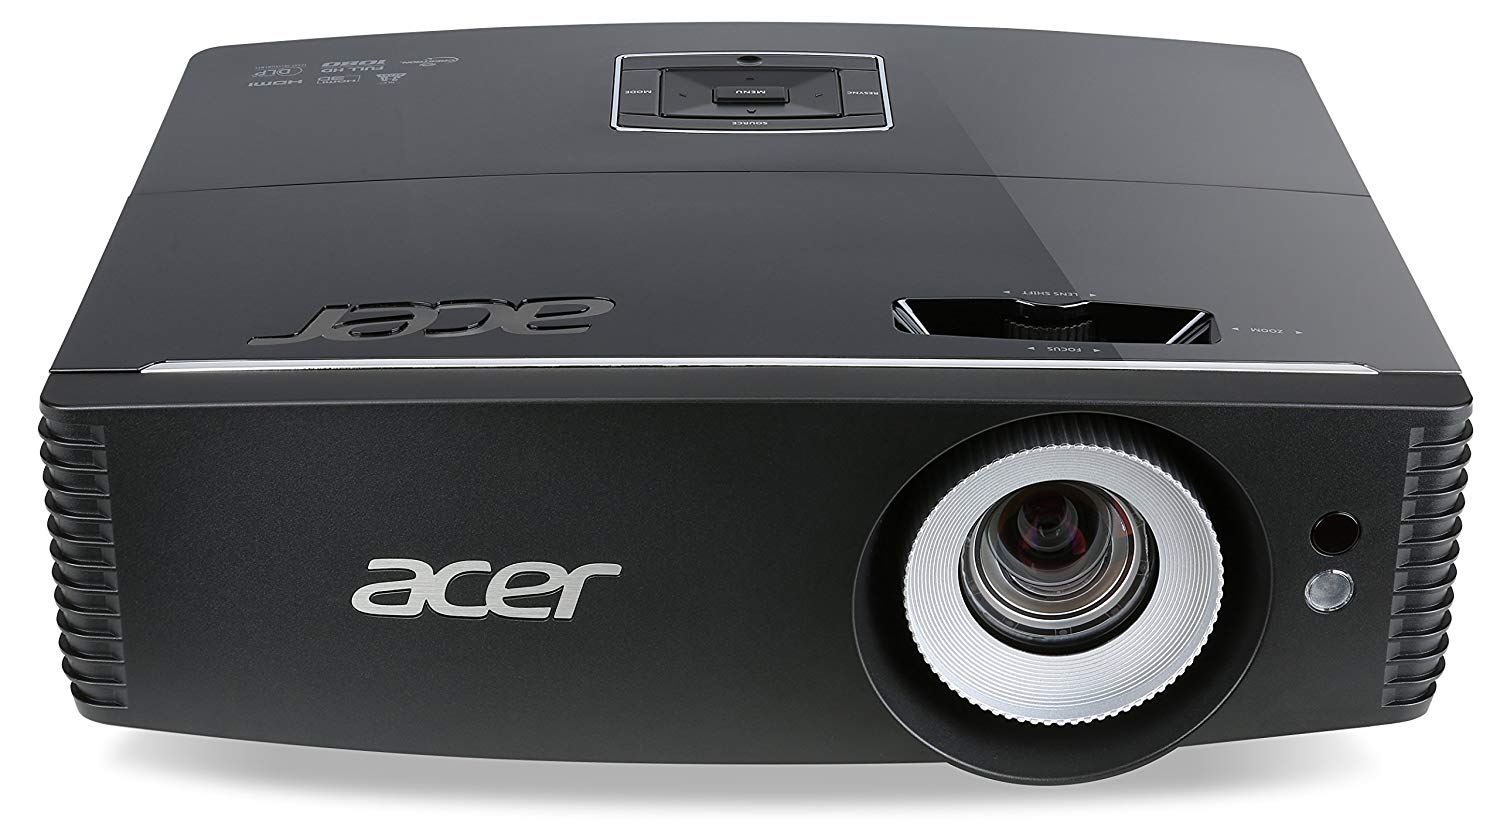 Acer P6200 XGA Projector